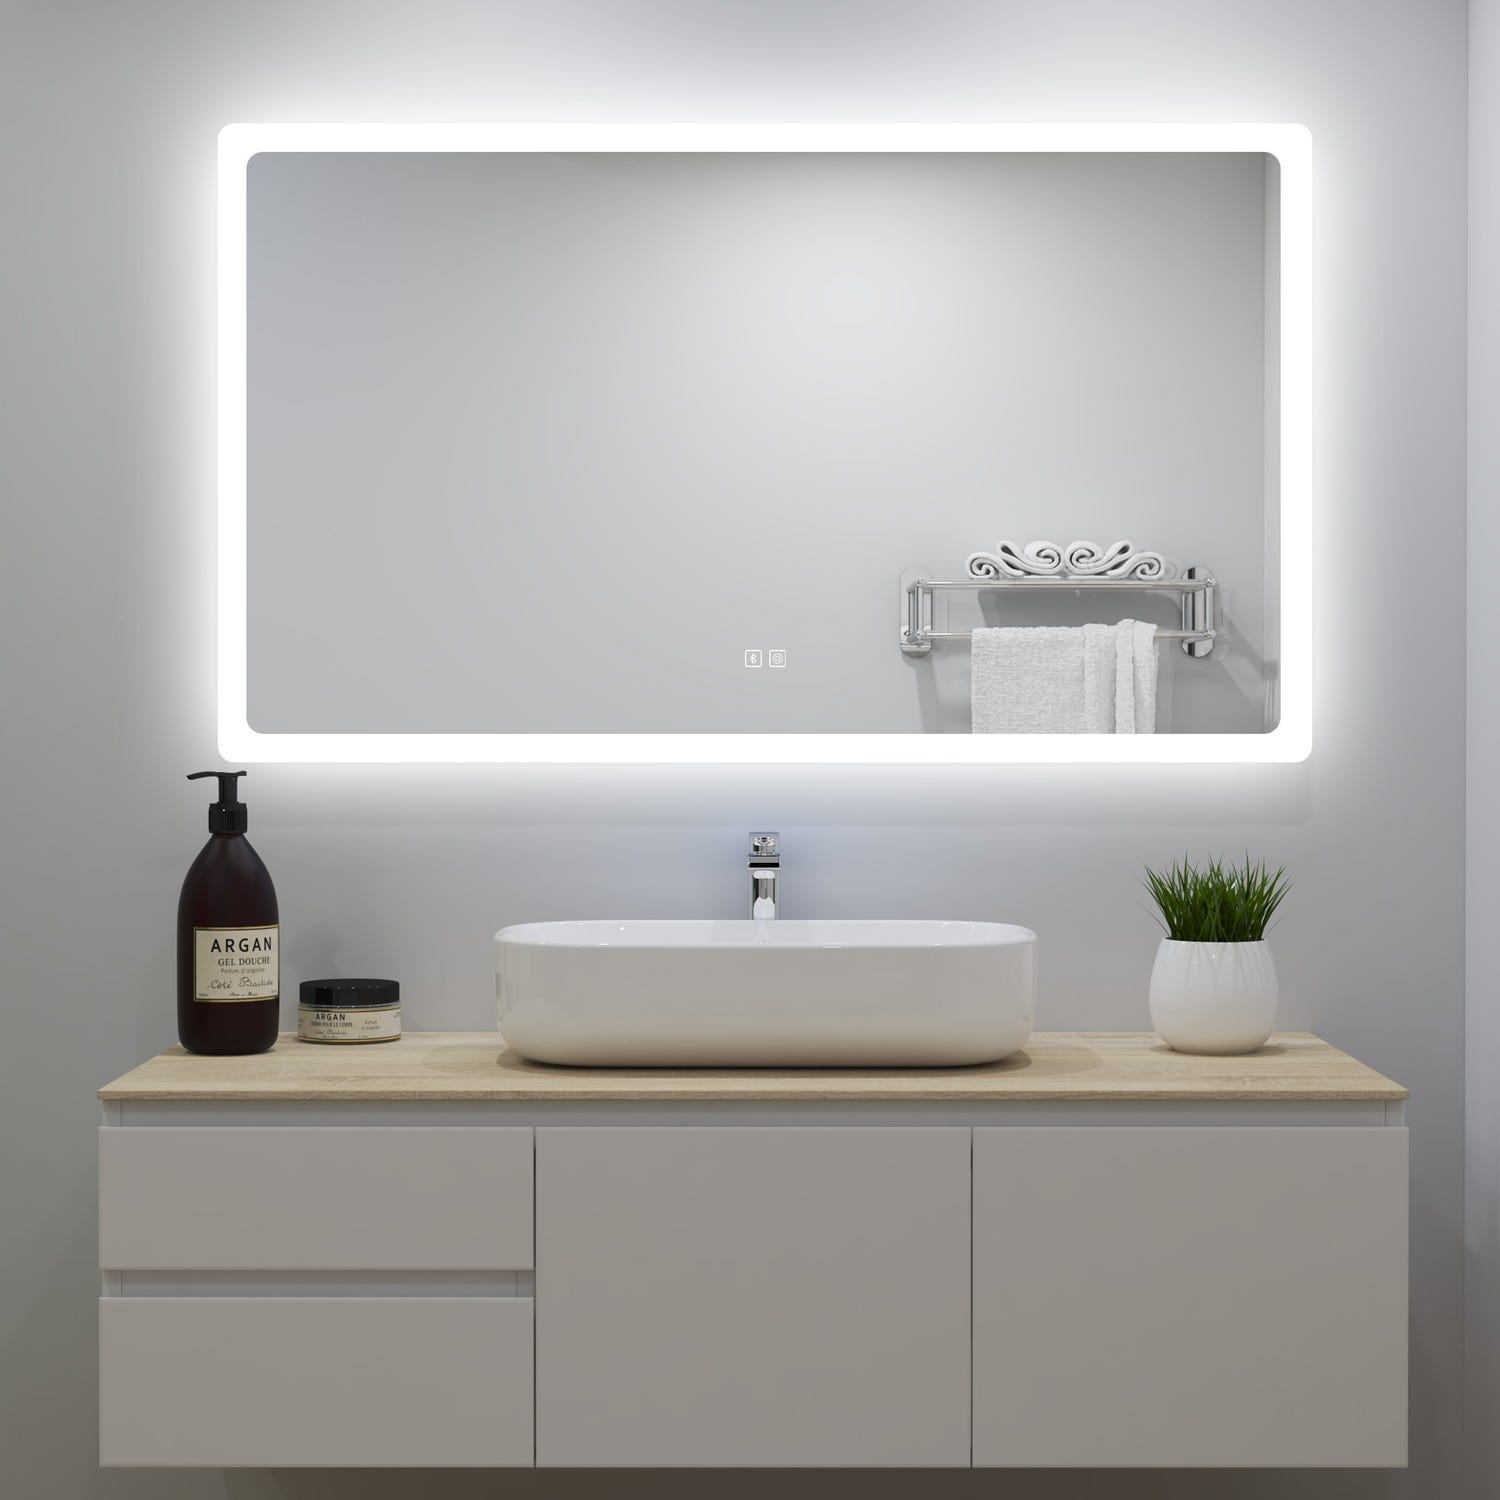 Espejo baño LED 140 cm.